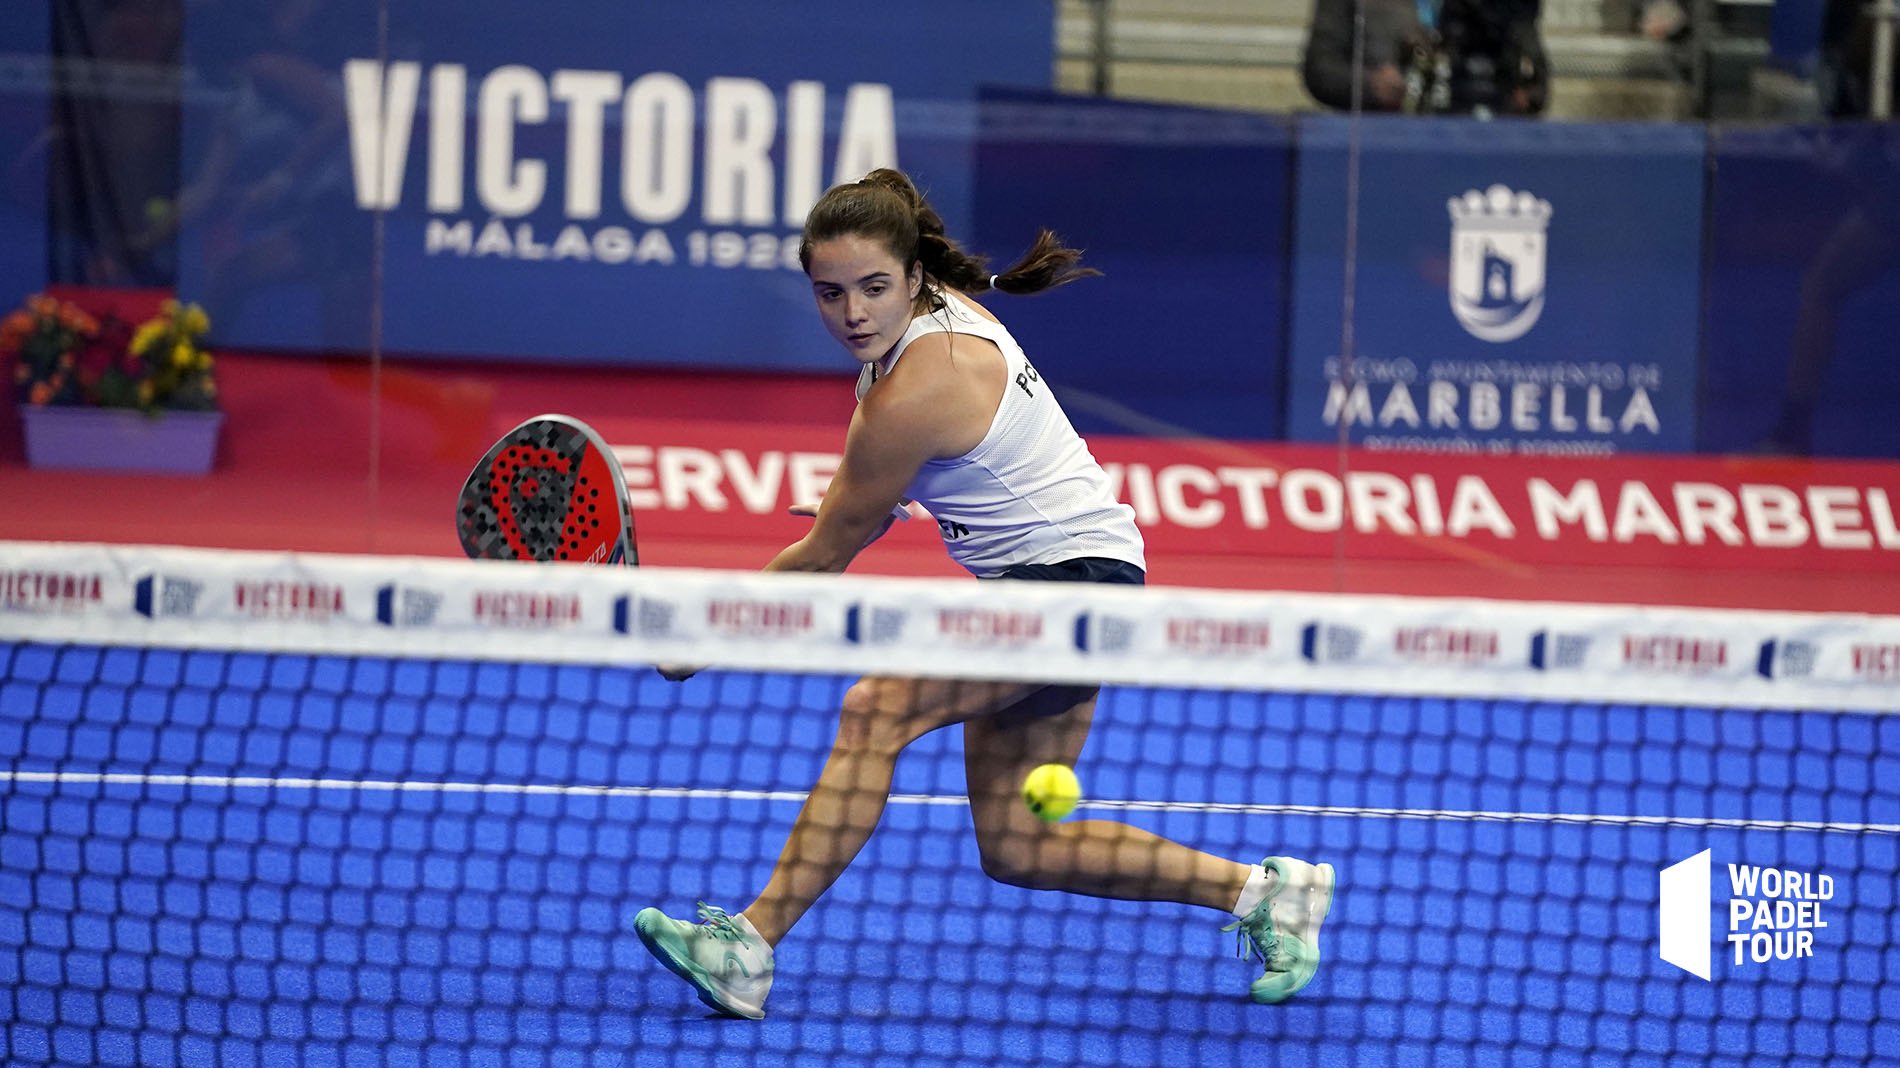 Paula Josemaría während des Viertelfinalspiels. | Foto: World Padel Tour